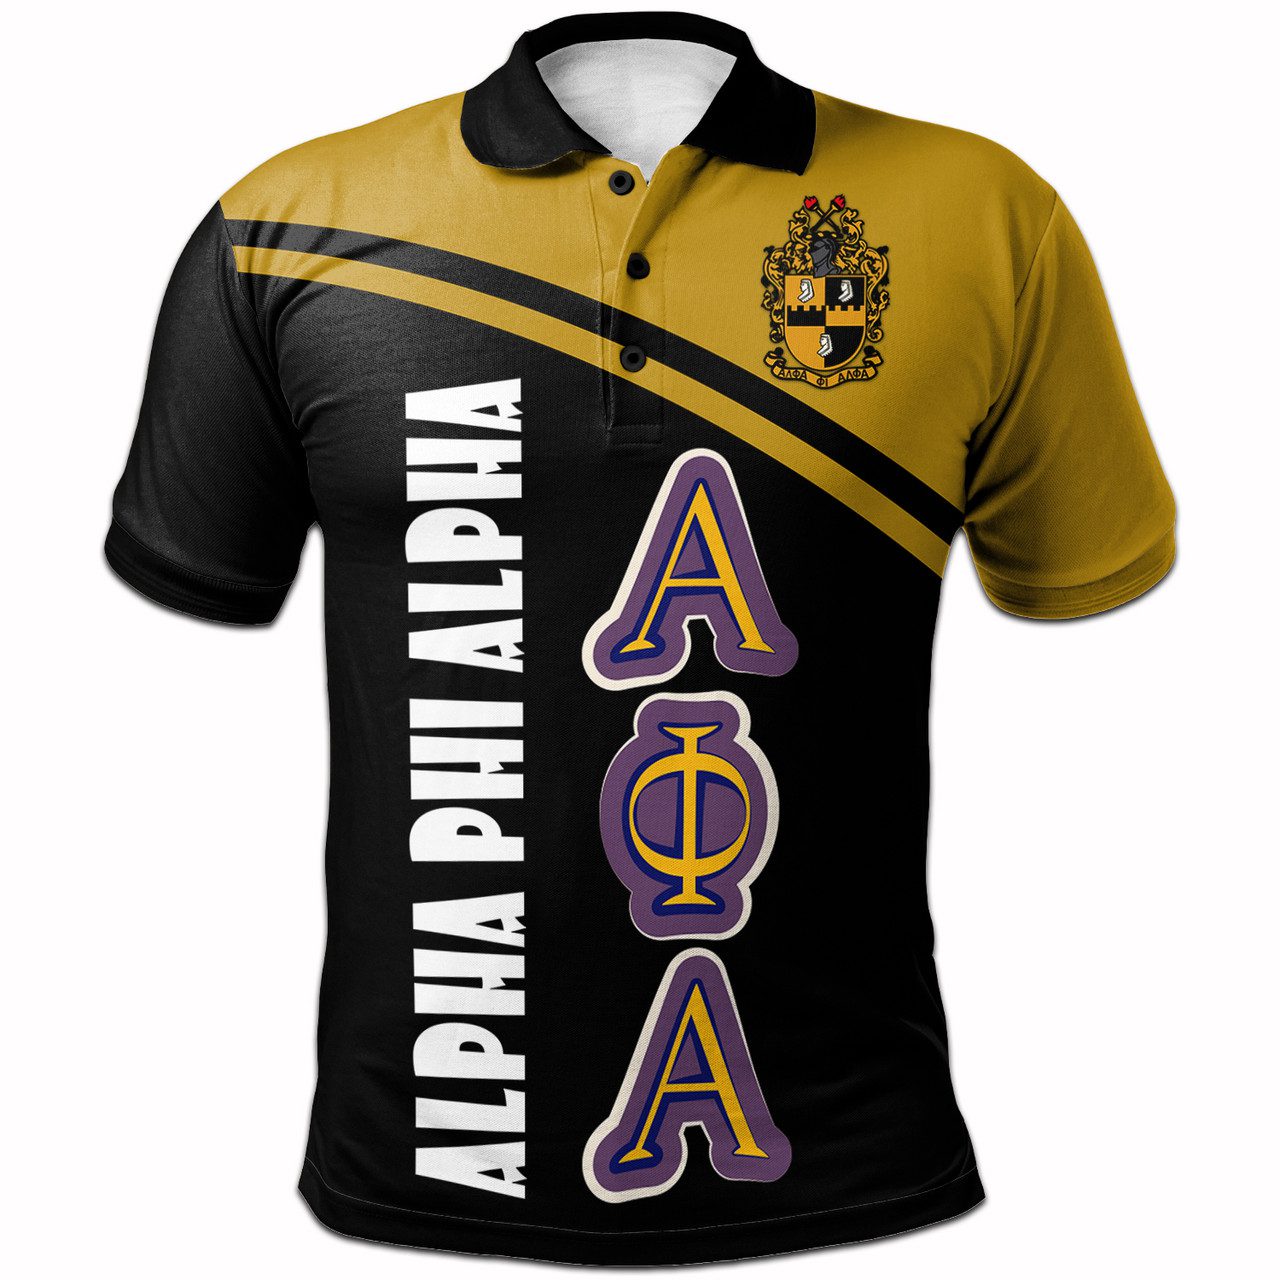 Alpha Phi Alpha Polo Shirt – Fraternity Curve Version Polo Shirt